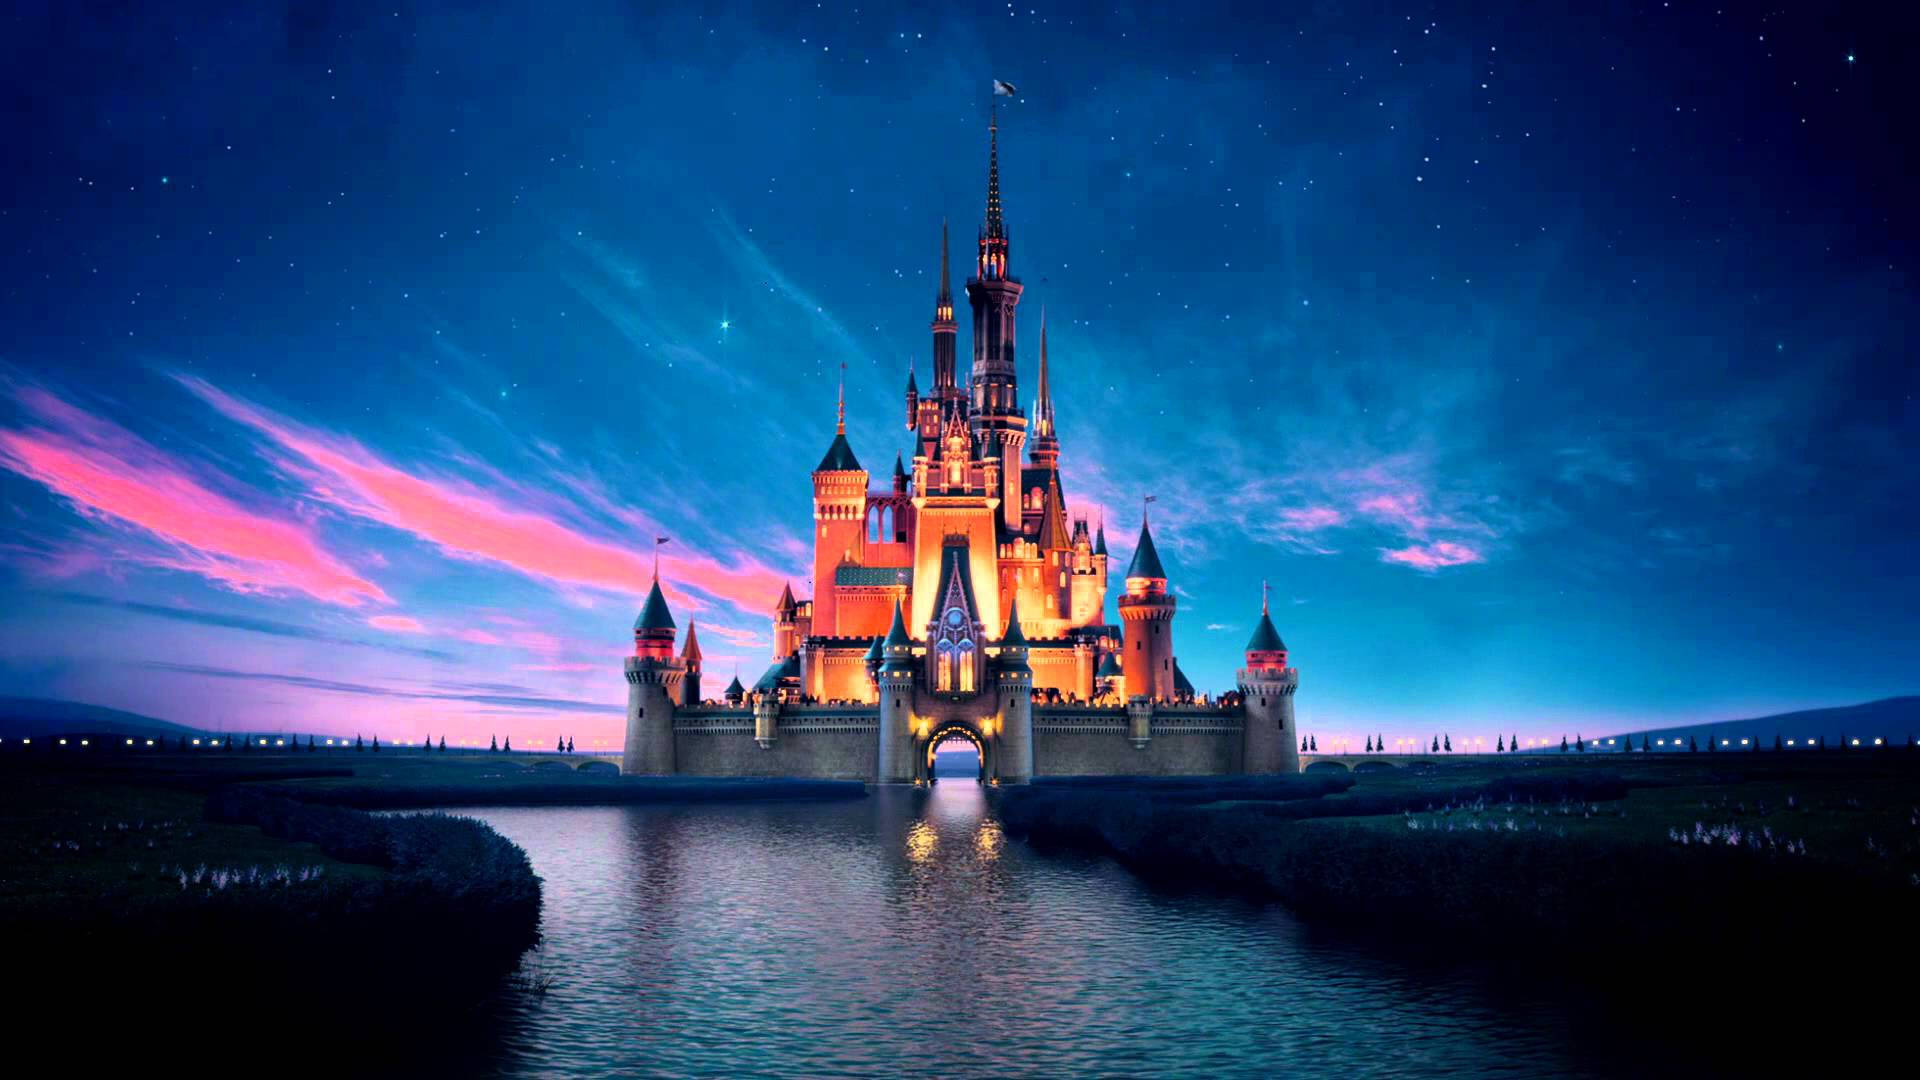 Disney hackerata: rubati 1 TB di dati, tra cui progetti non annunciati